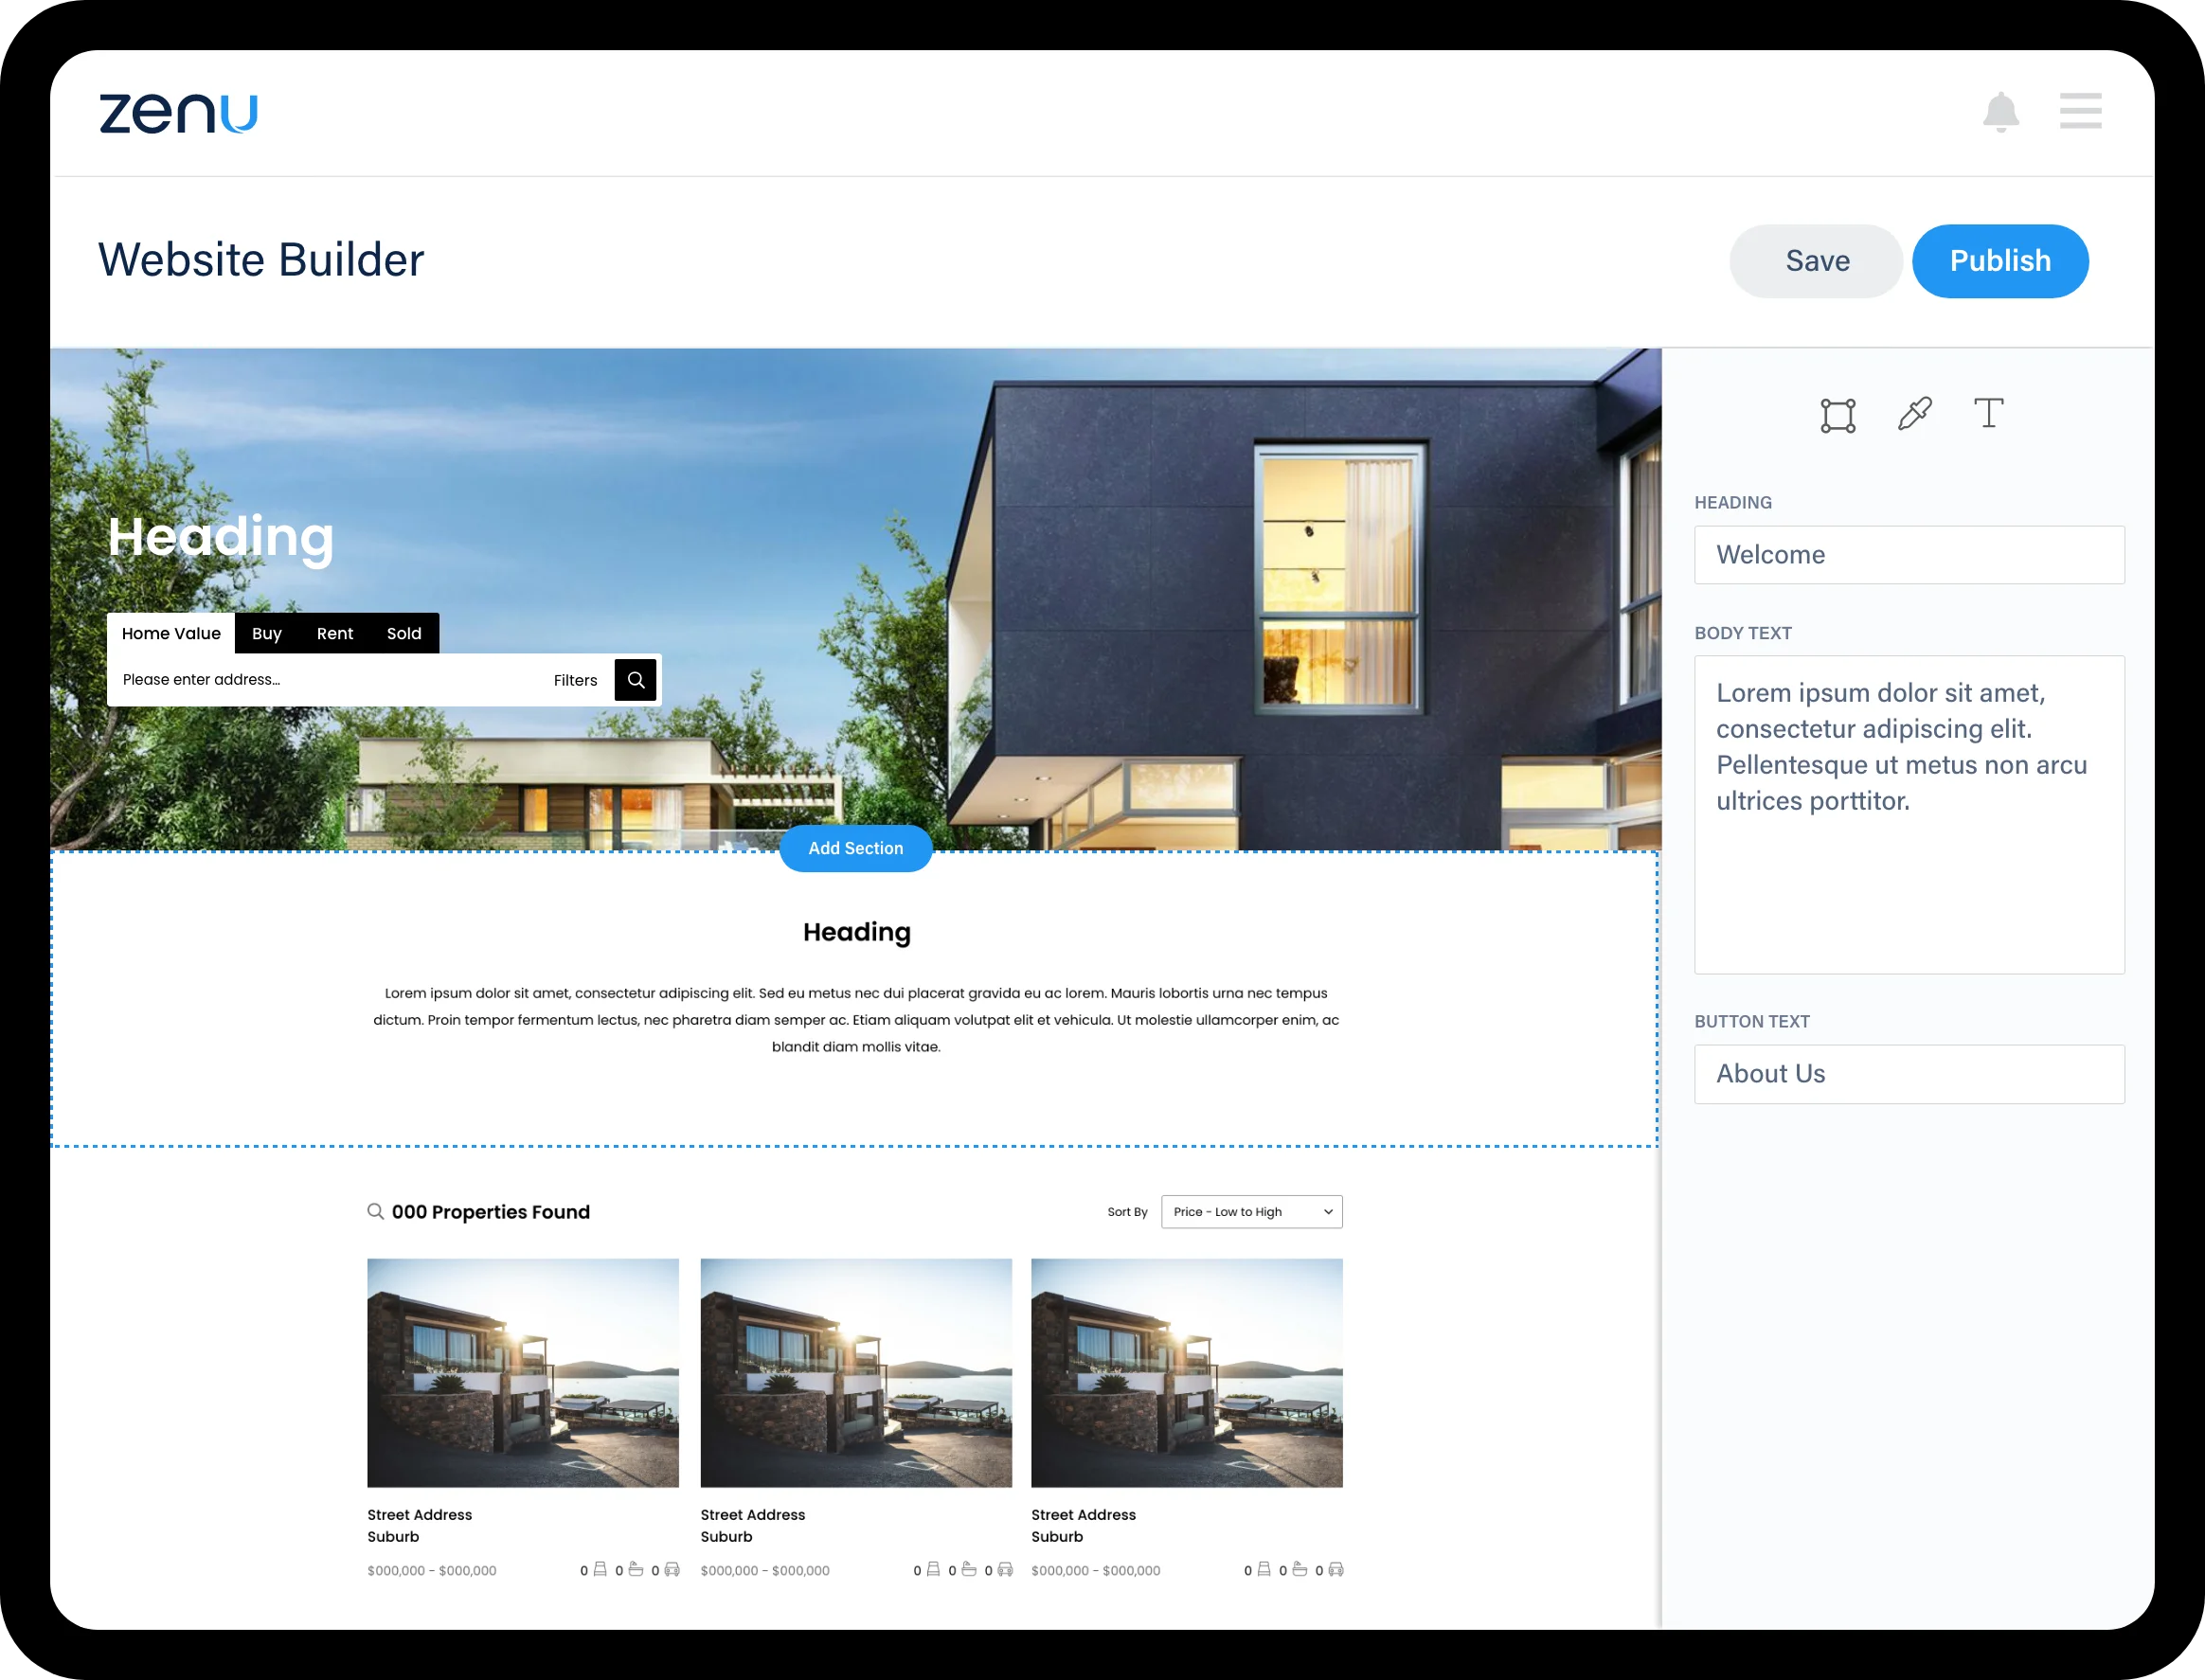 Image of Zenu Real Estate website builder and template real estate website design